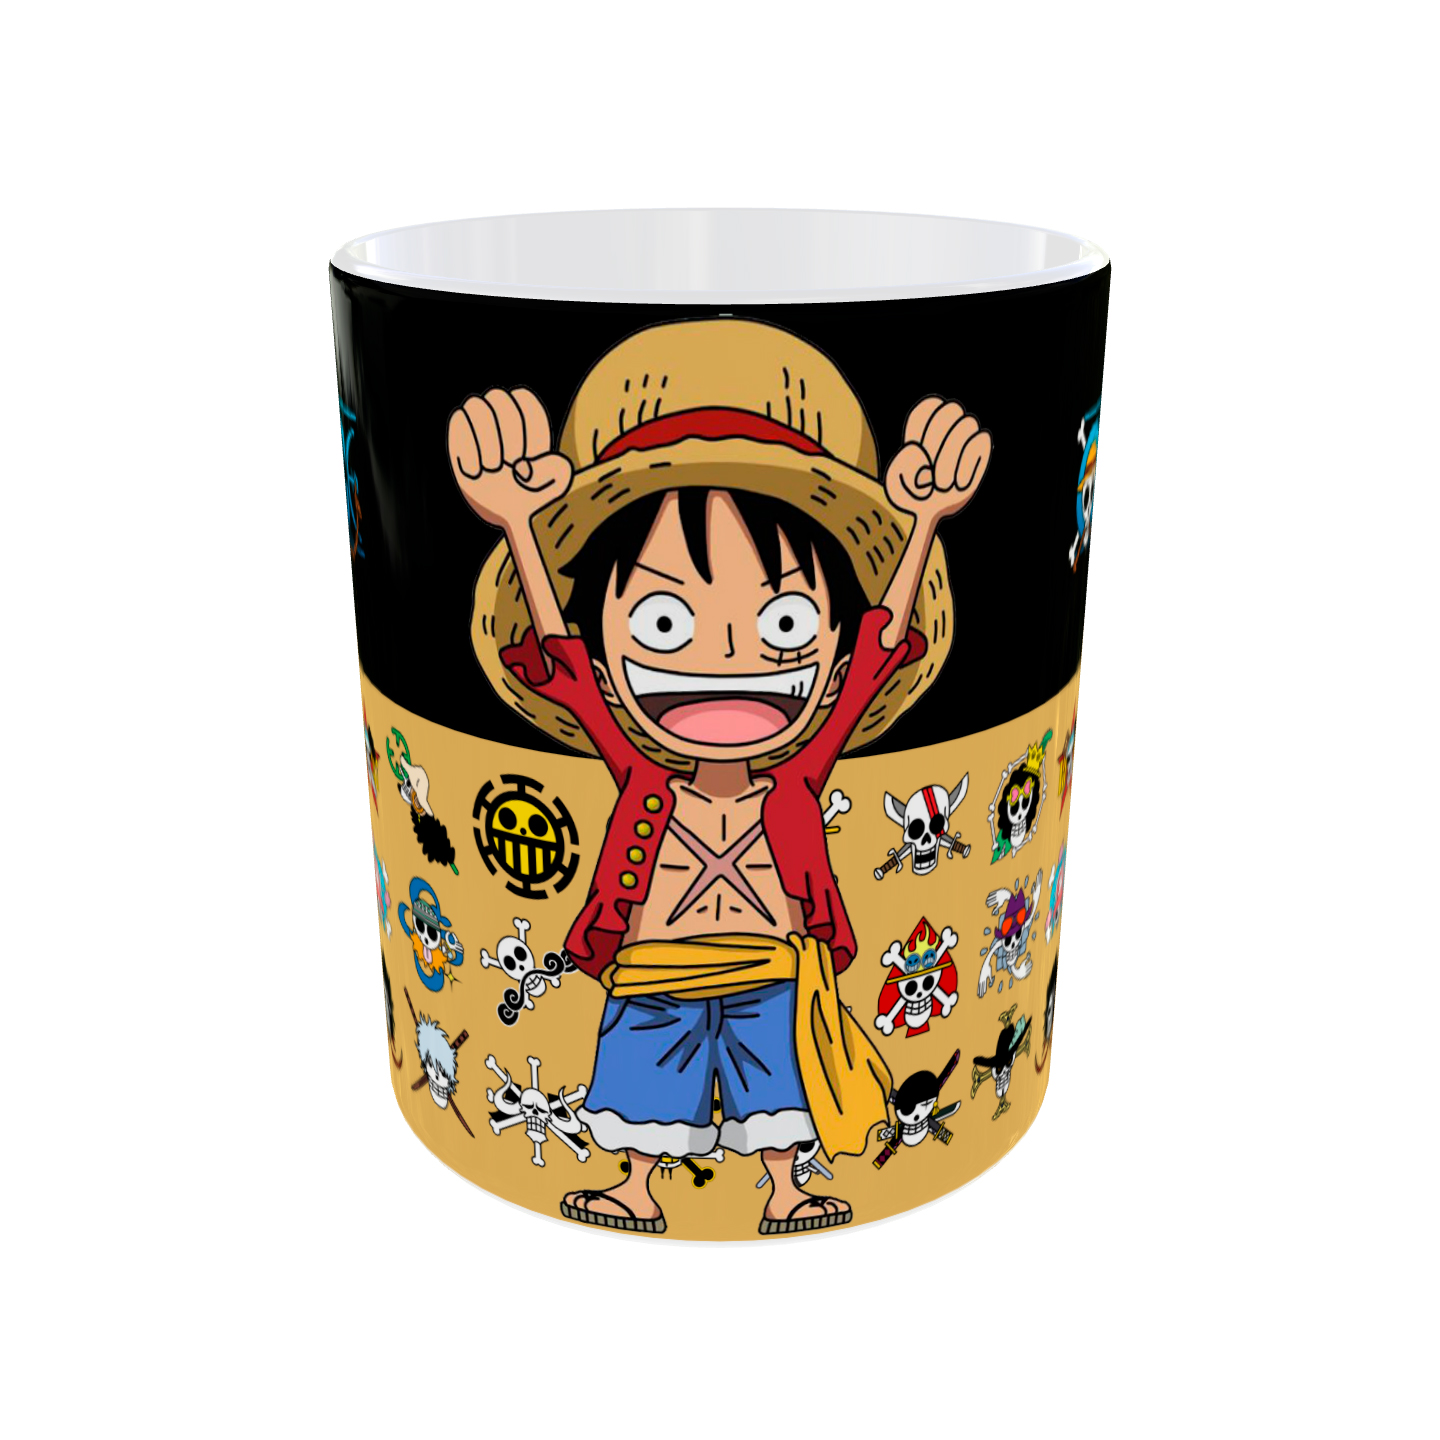 Comprar Taza One Piece. Precio en oferta